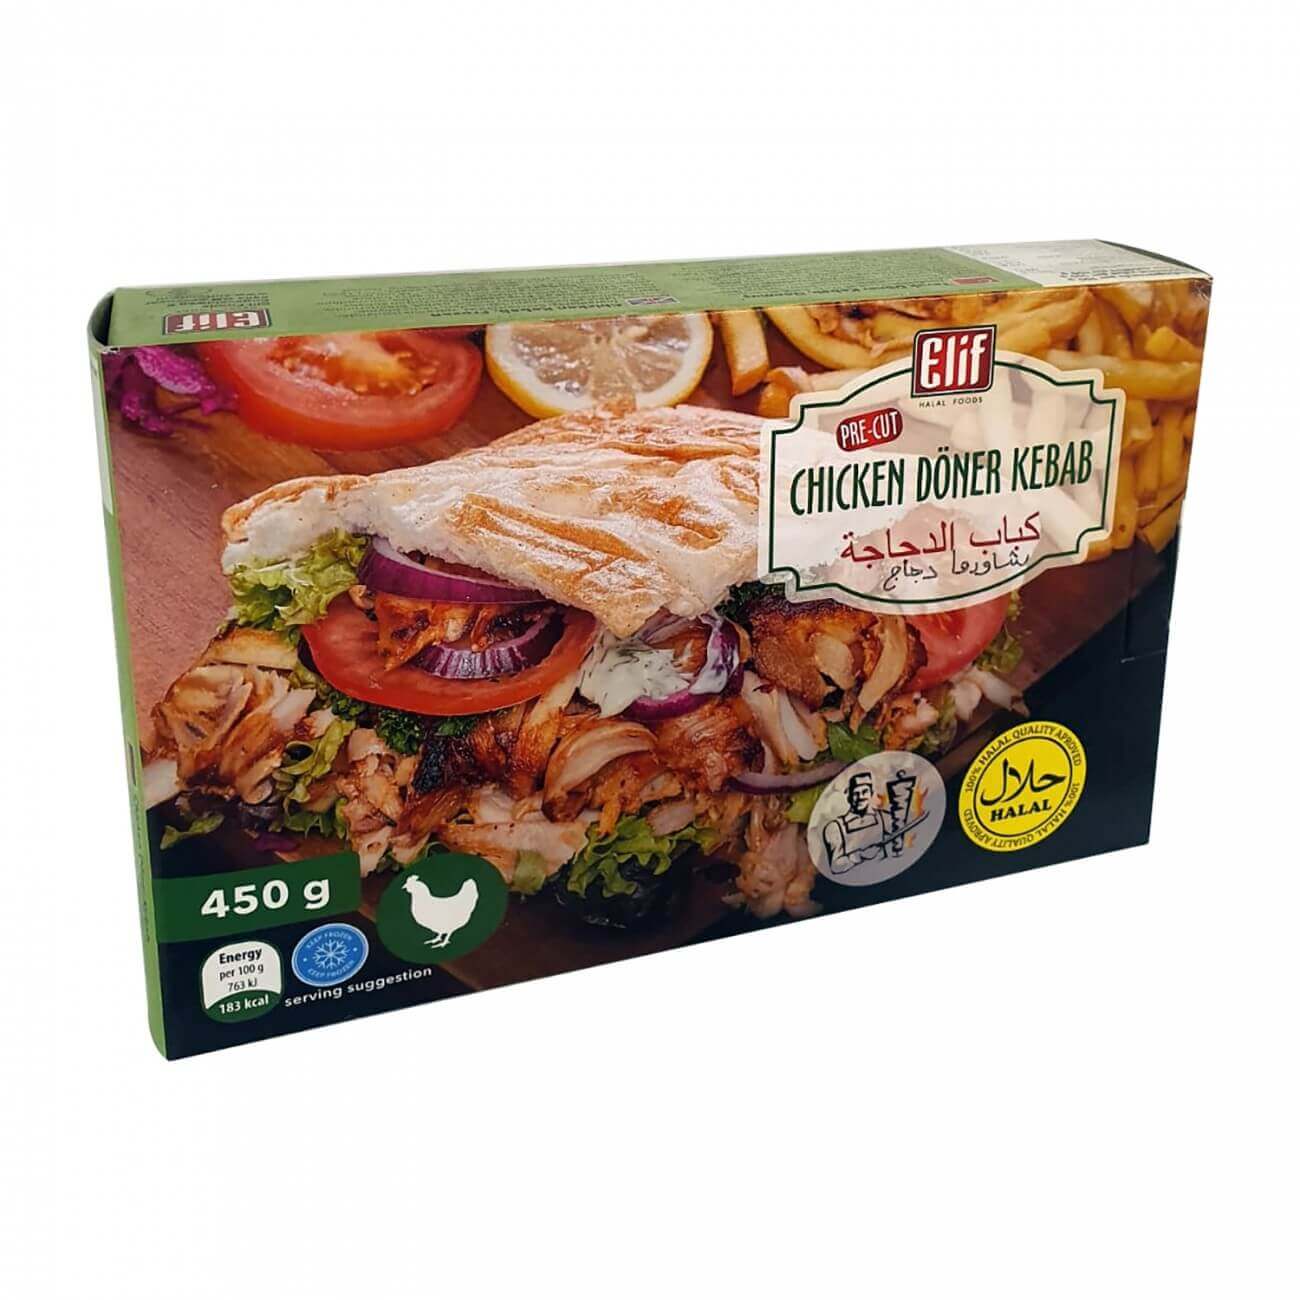 Elif Chicken Doner (450G) - Aytac Foods